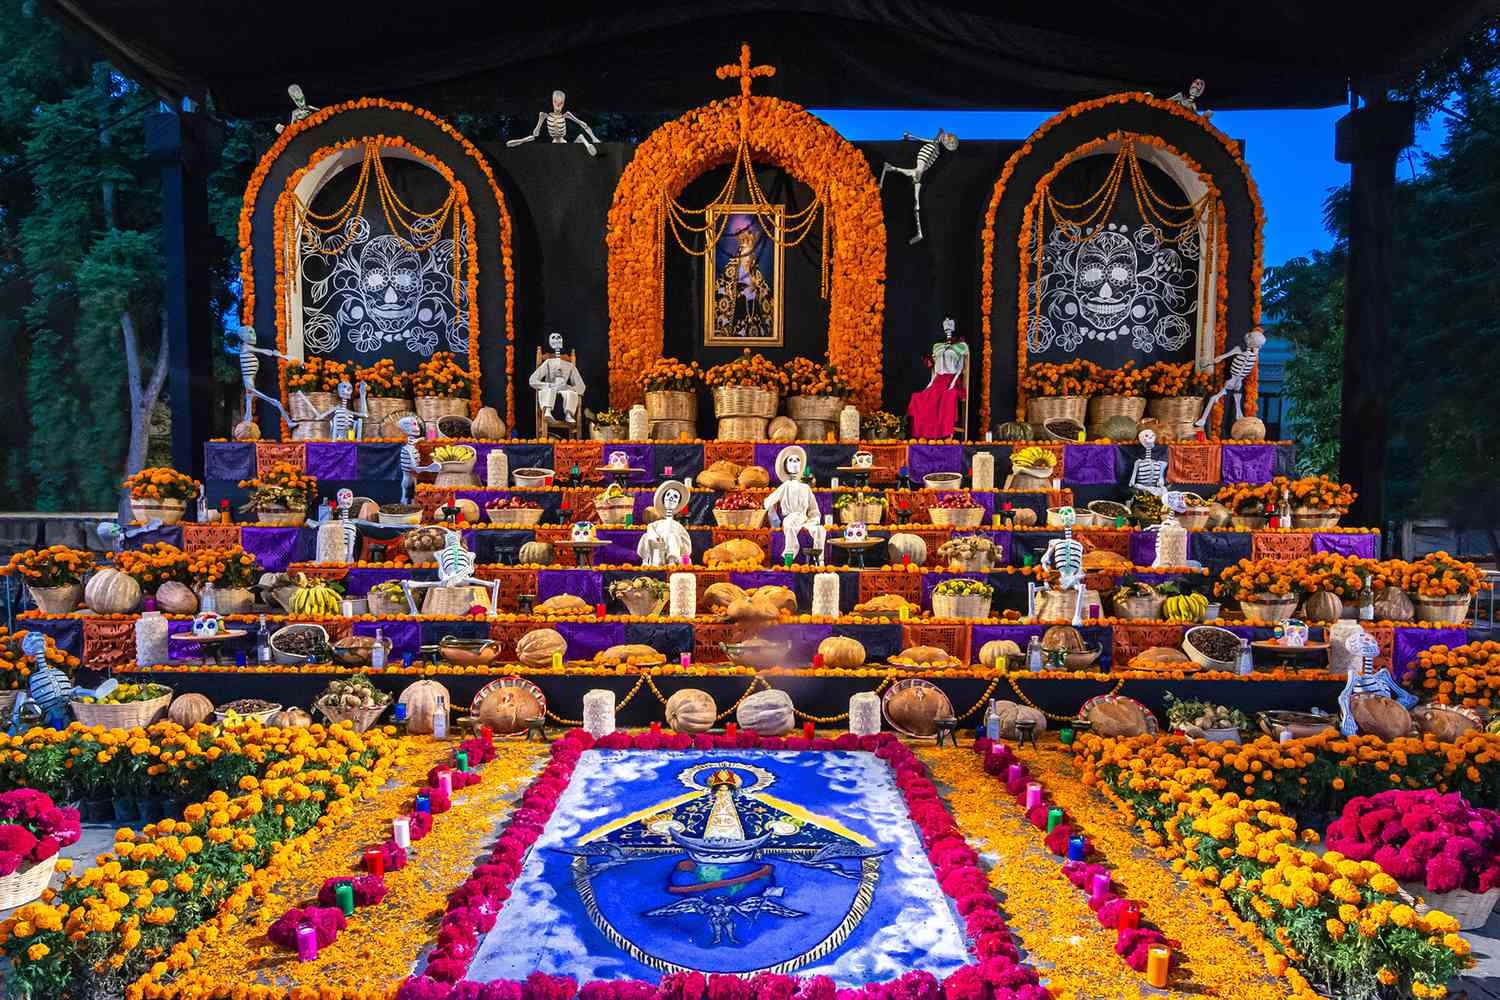 Il s'agit d'un autel du jour des morts dans un sanctuaire public du centre-ville historique d'Oaxaca, au Mexique.